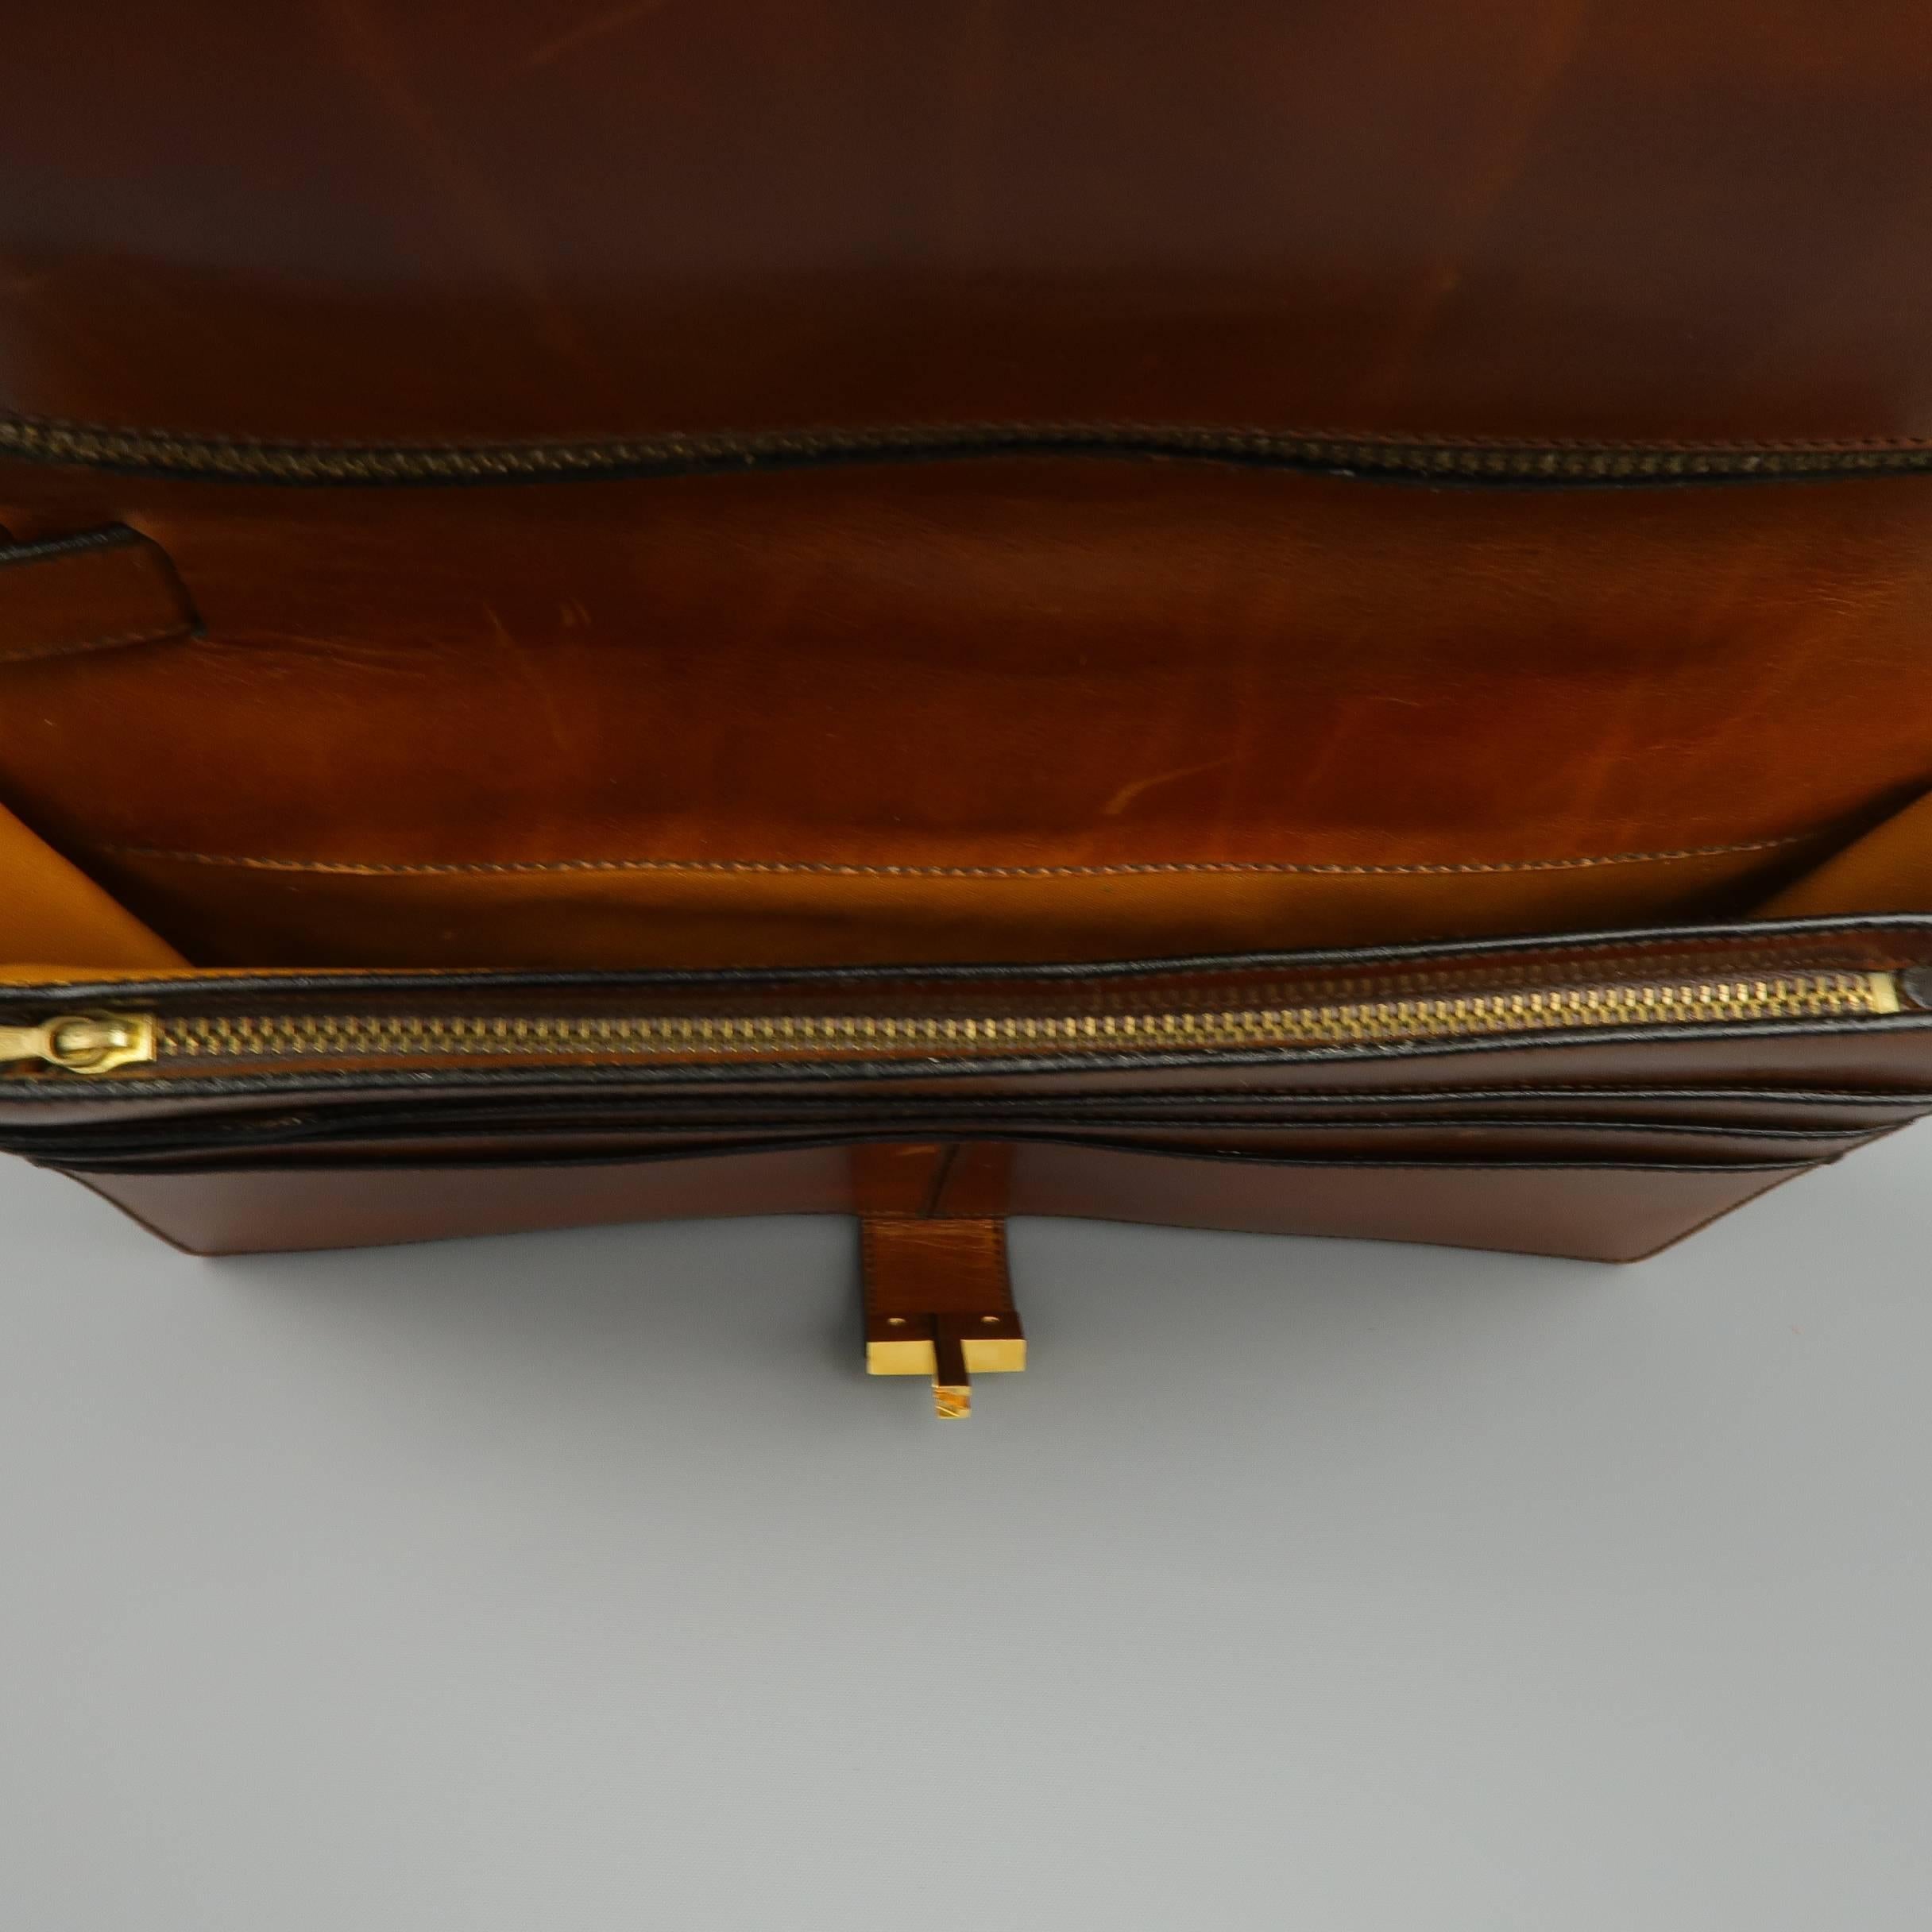 Vintage A.TESTONI Tan Leather Wristlet Clutch 1